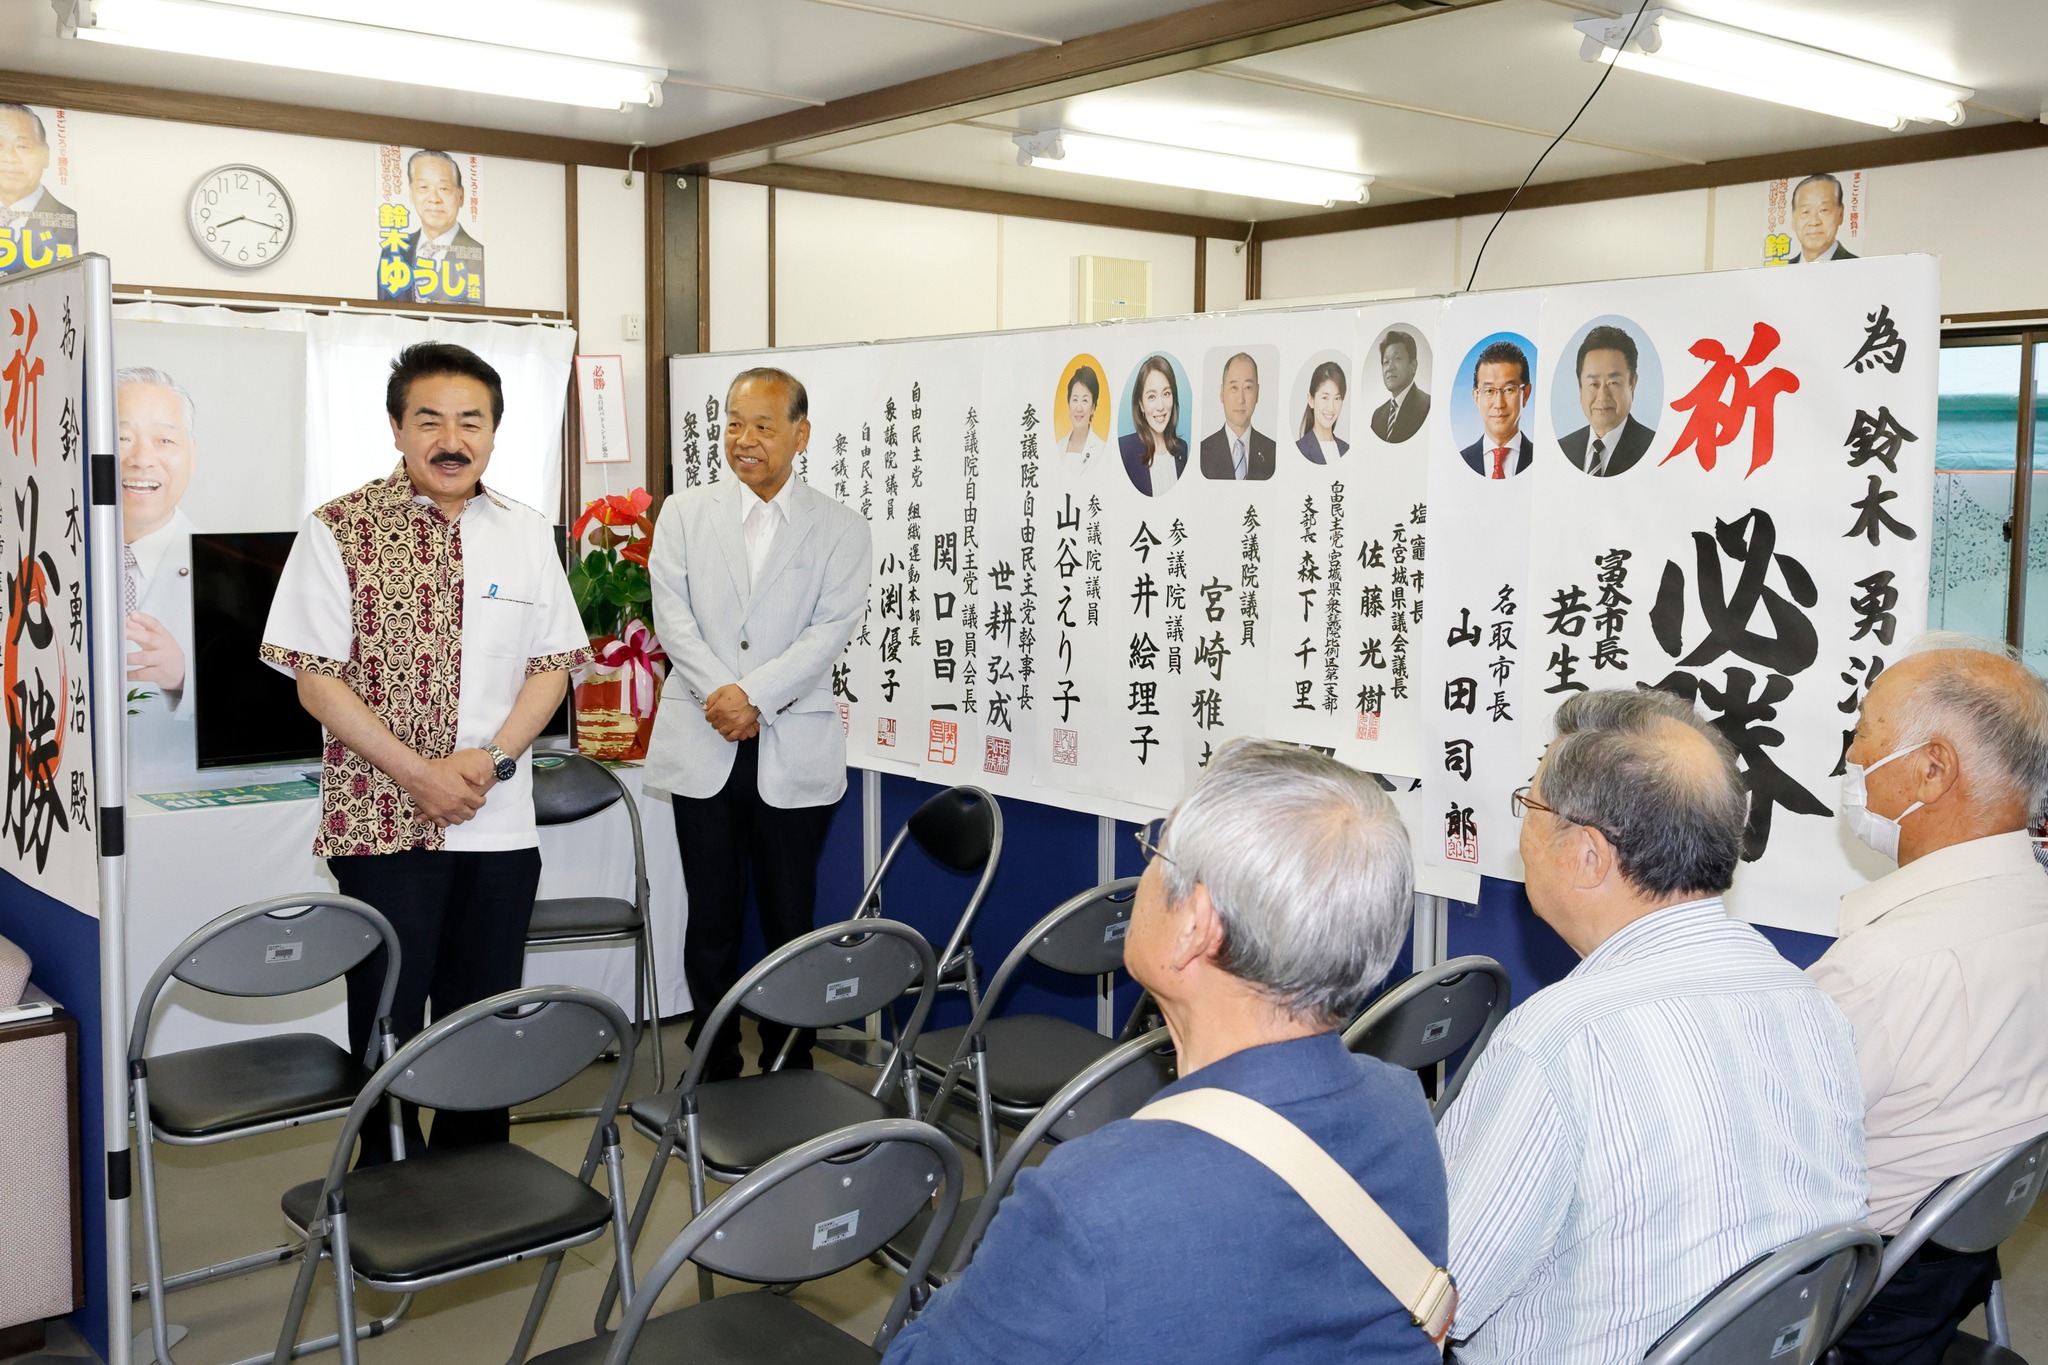 仙台市議会議員選挙が始まりました！選挙事務所に、佐藤正久参議院議員が応援に駆けつけてくれました。